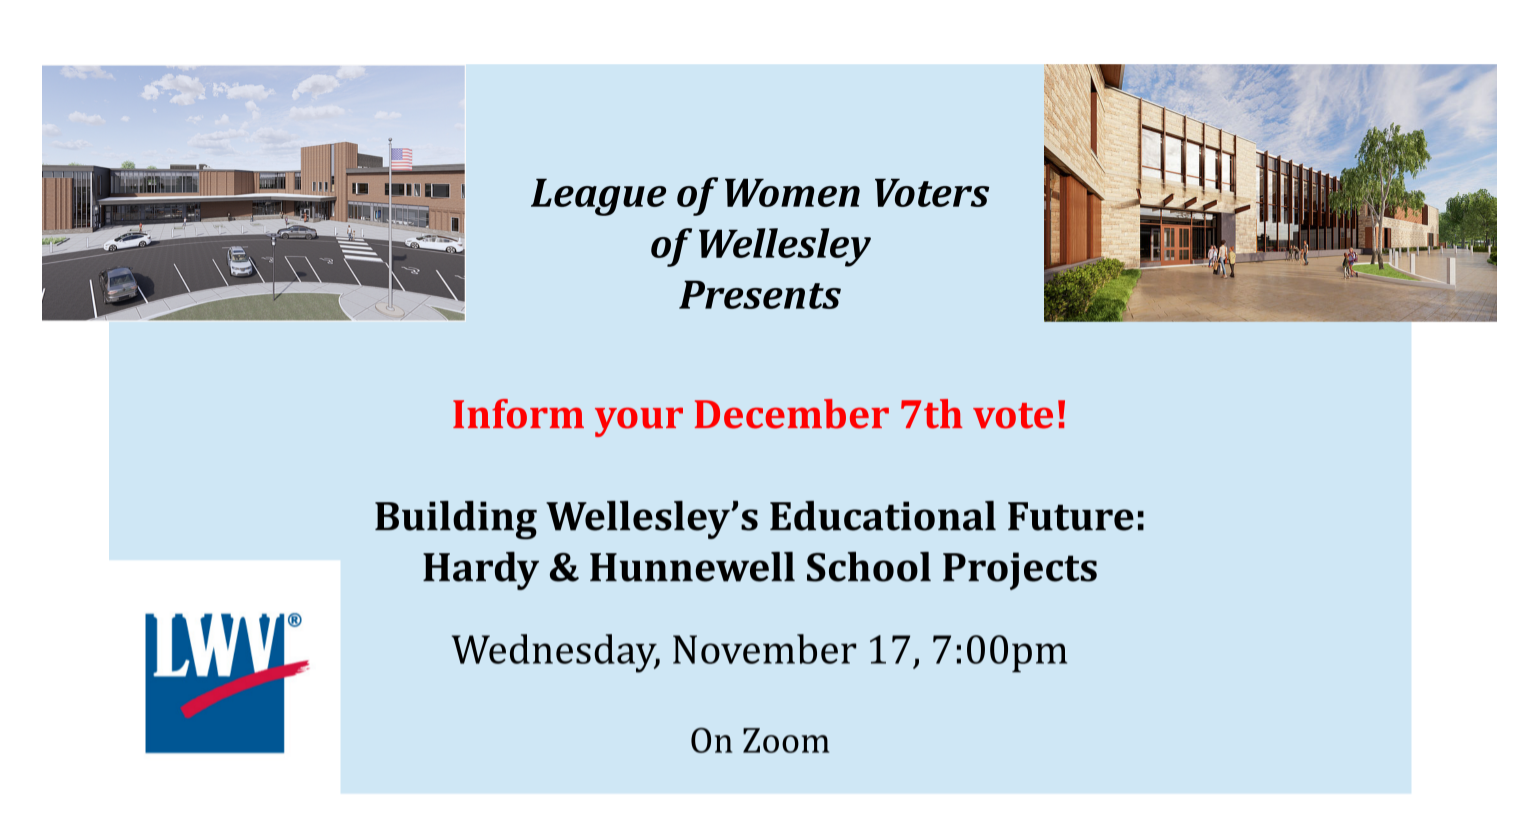 League of Women Voters, Wellesley